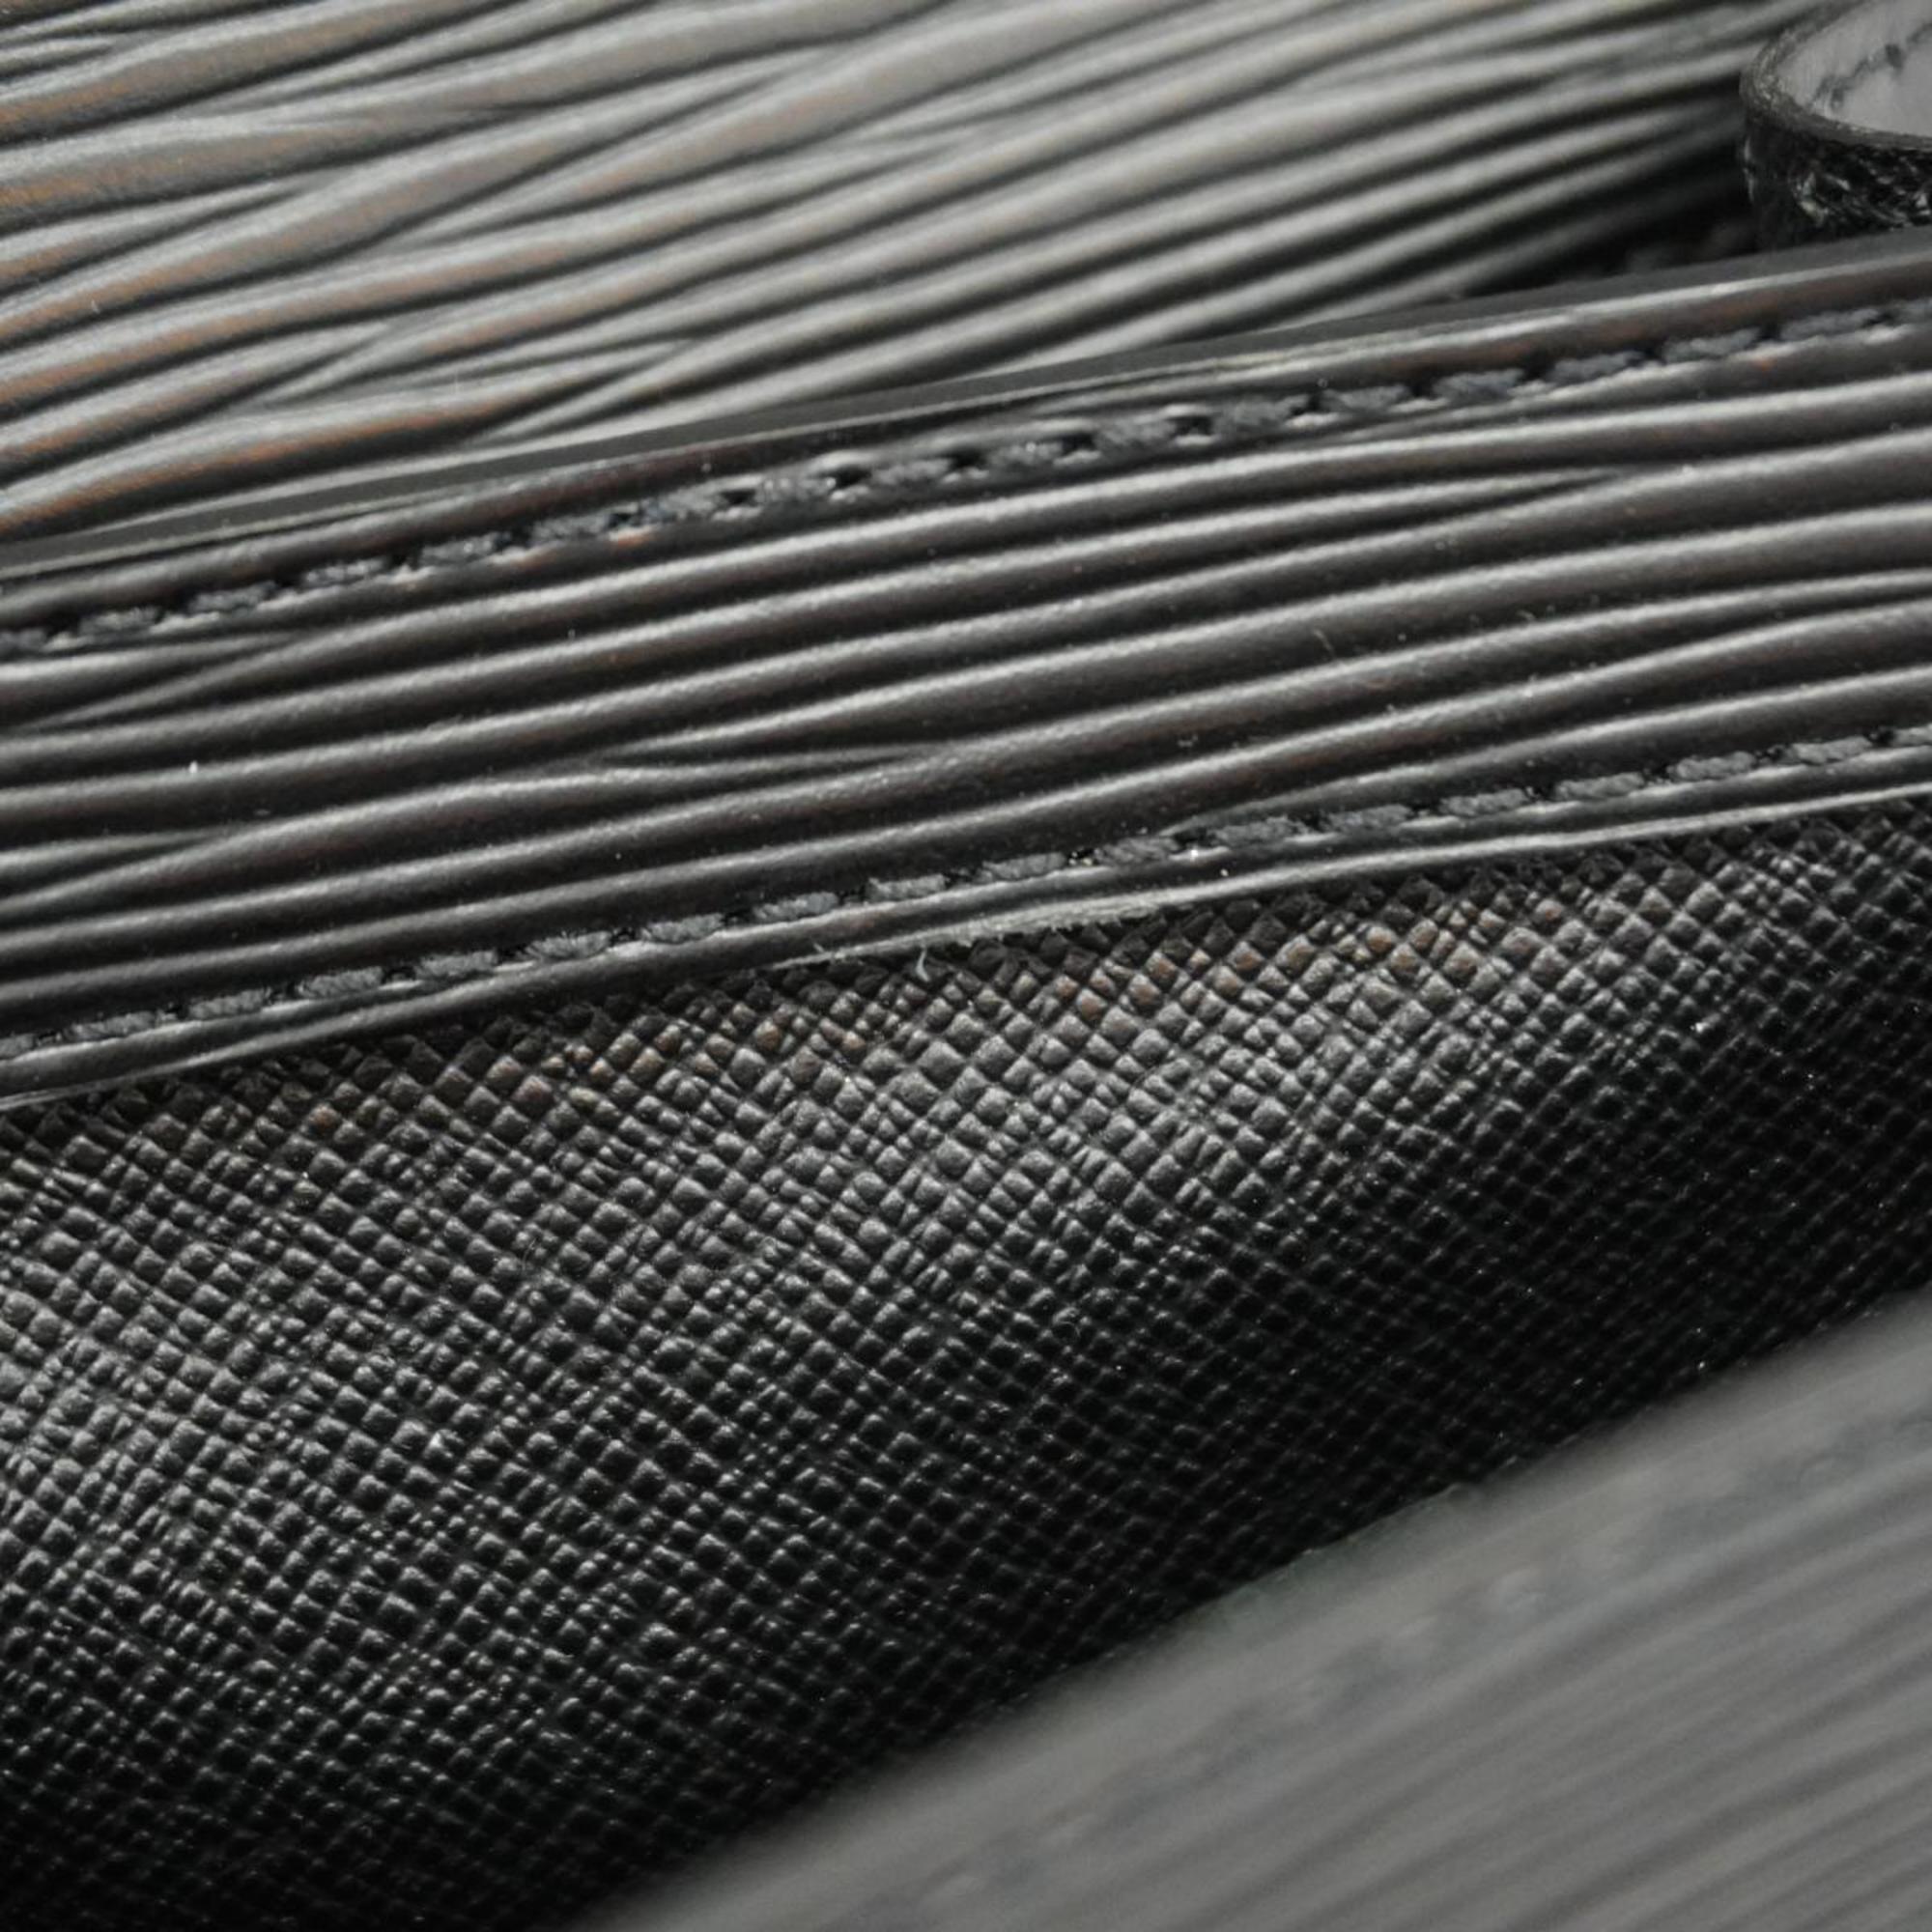 Louis Vuitton Clutch Bag Epi Pochette Serie Dragonne M52612 Noir Men's